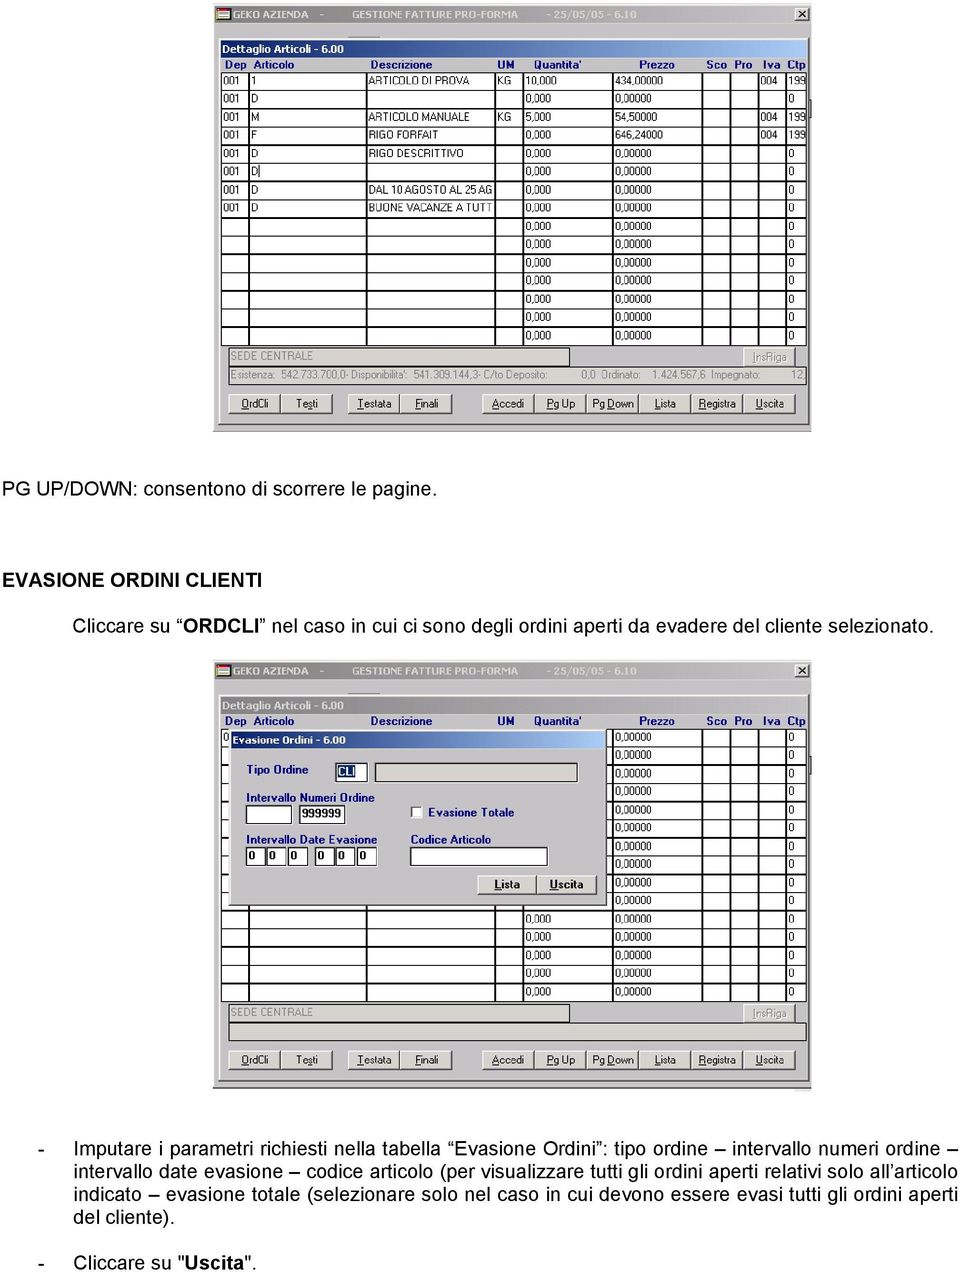 - Imputare i parametri richiesti nella tabella Evasione Ordini : tipo ordine intervallo numeri ordine intervallo date evasione